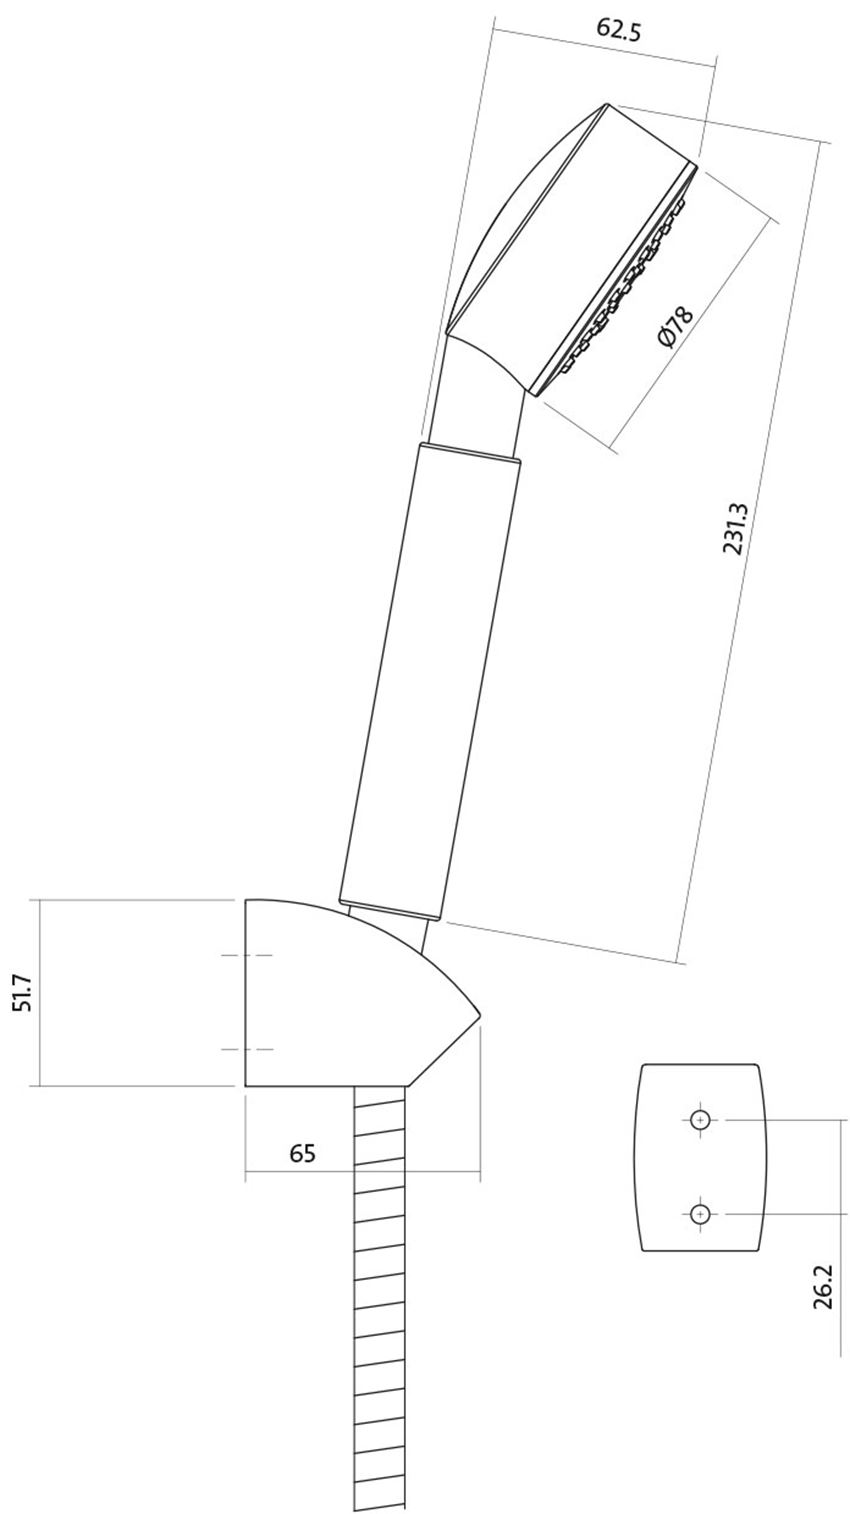 Zestaw natryskowy Cersanit Aton S951-024 rys techniczny